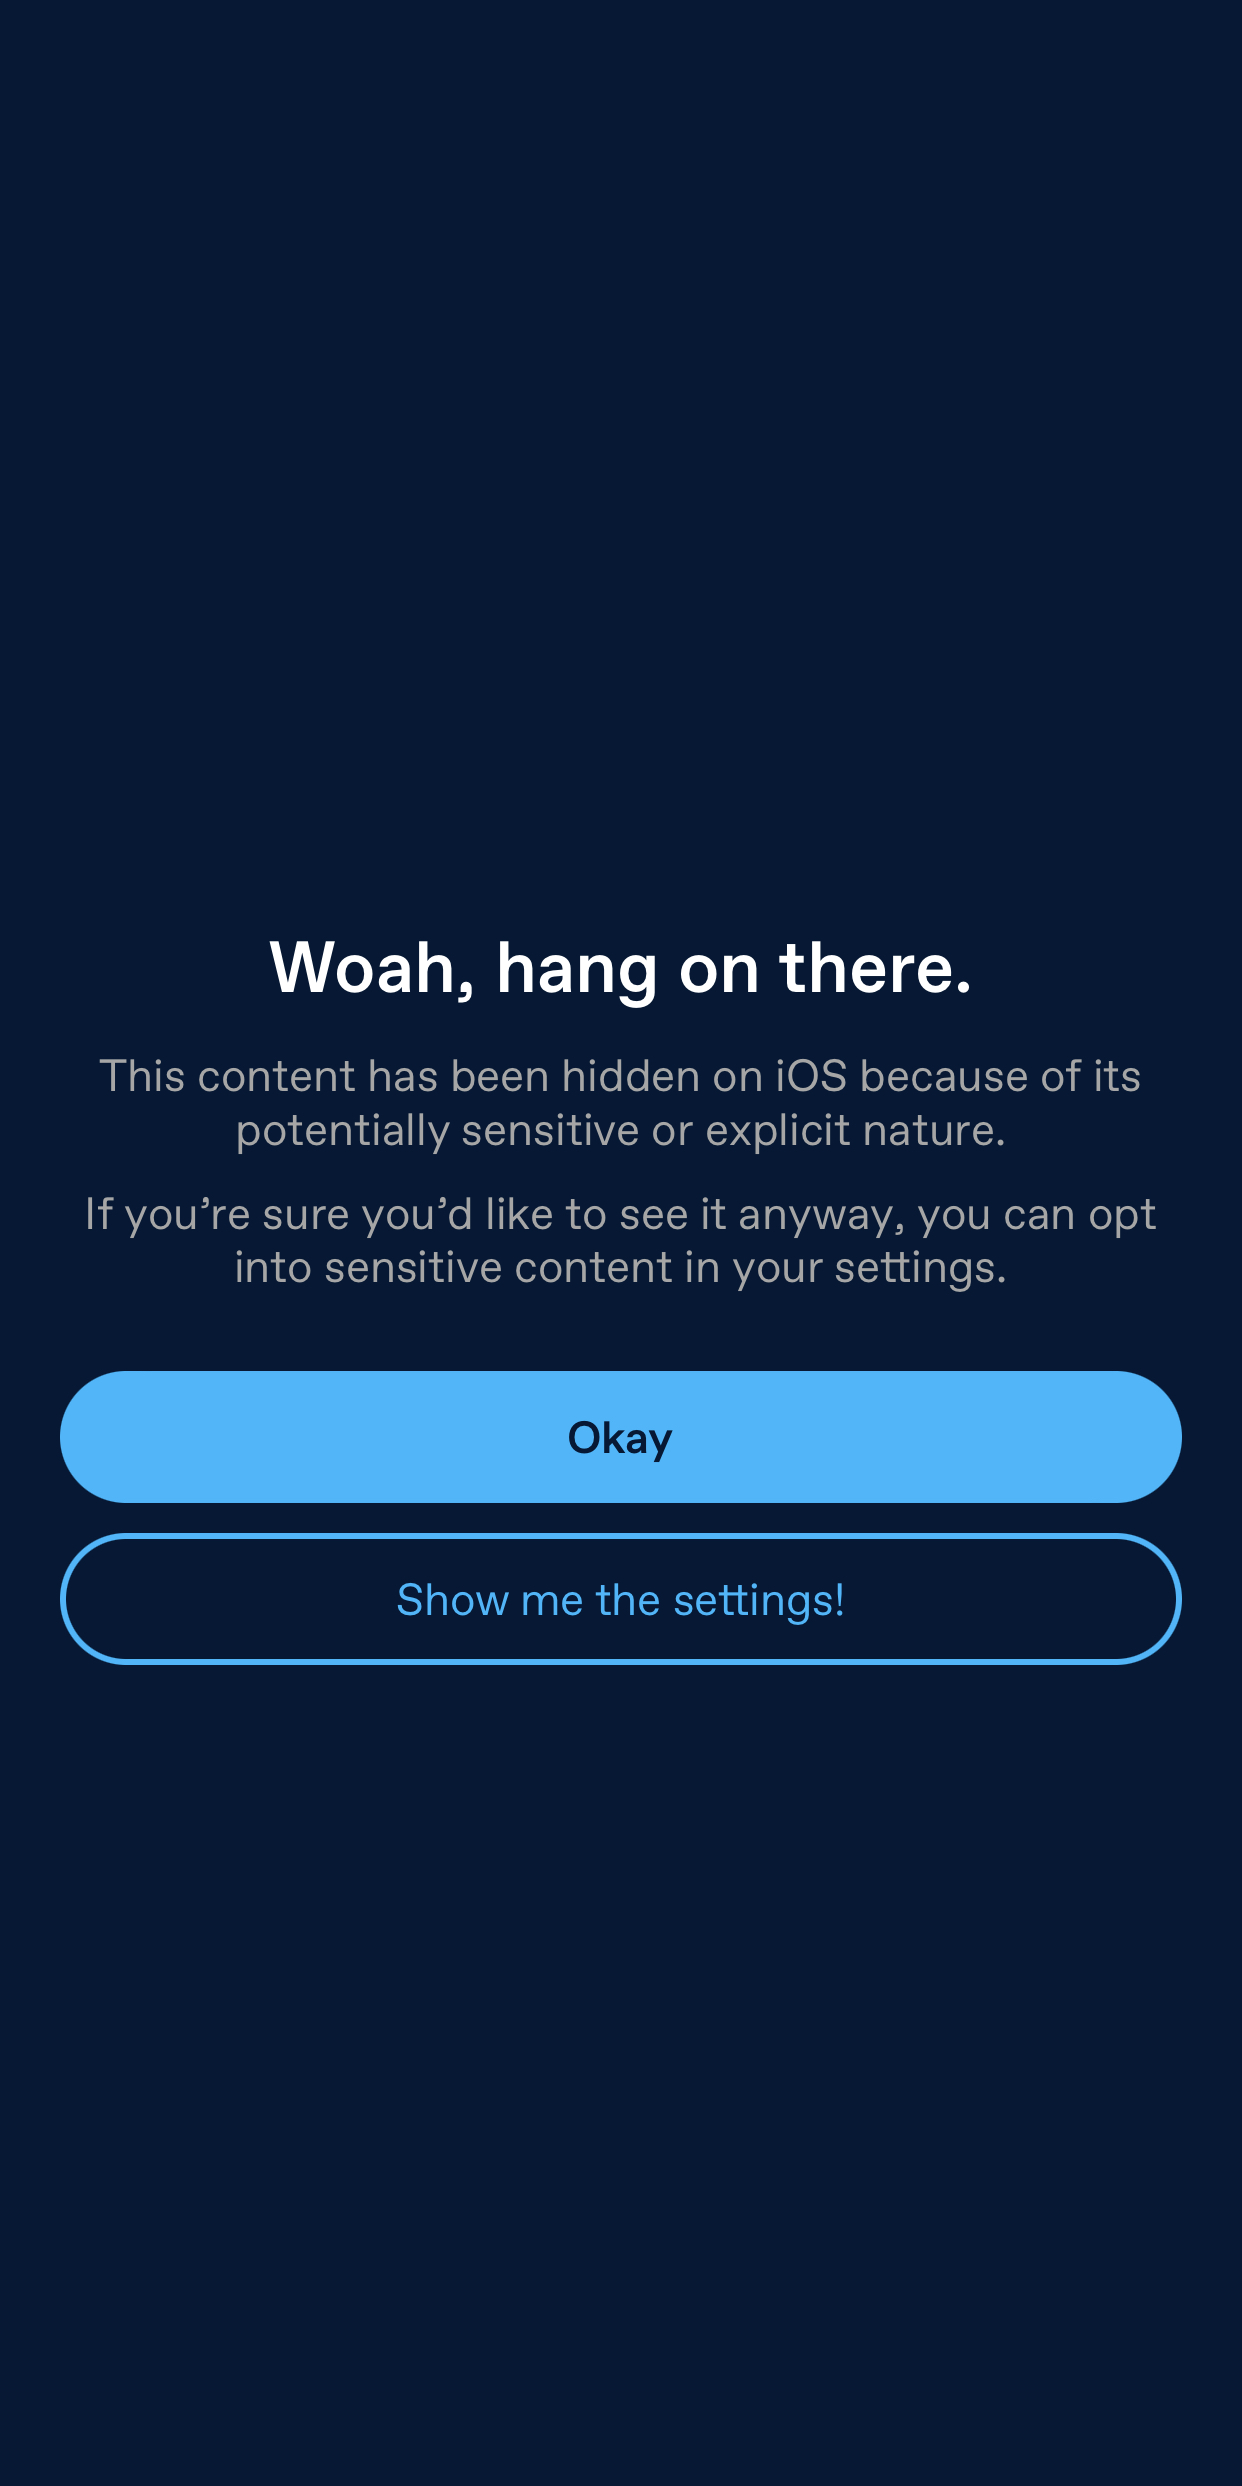 iOSアプリのオーバーレイです。「おっと、お待ちください。このコンテンツは、示唆的または露骨な表現を含む可能性があるため、非表示になっています」と書かれています。それでも表示したい場合は、設定から閲覧注意コンテンツをオンにすることができます。その下にある2つのボタンには、「OK」と「設定を移動」と書かれています。